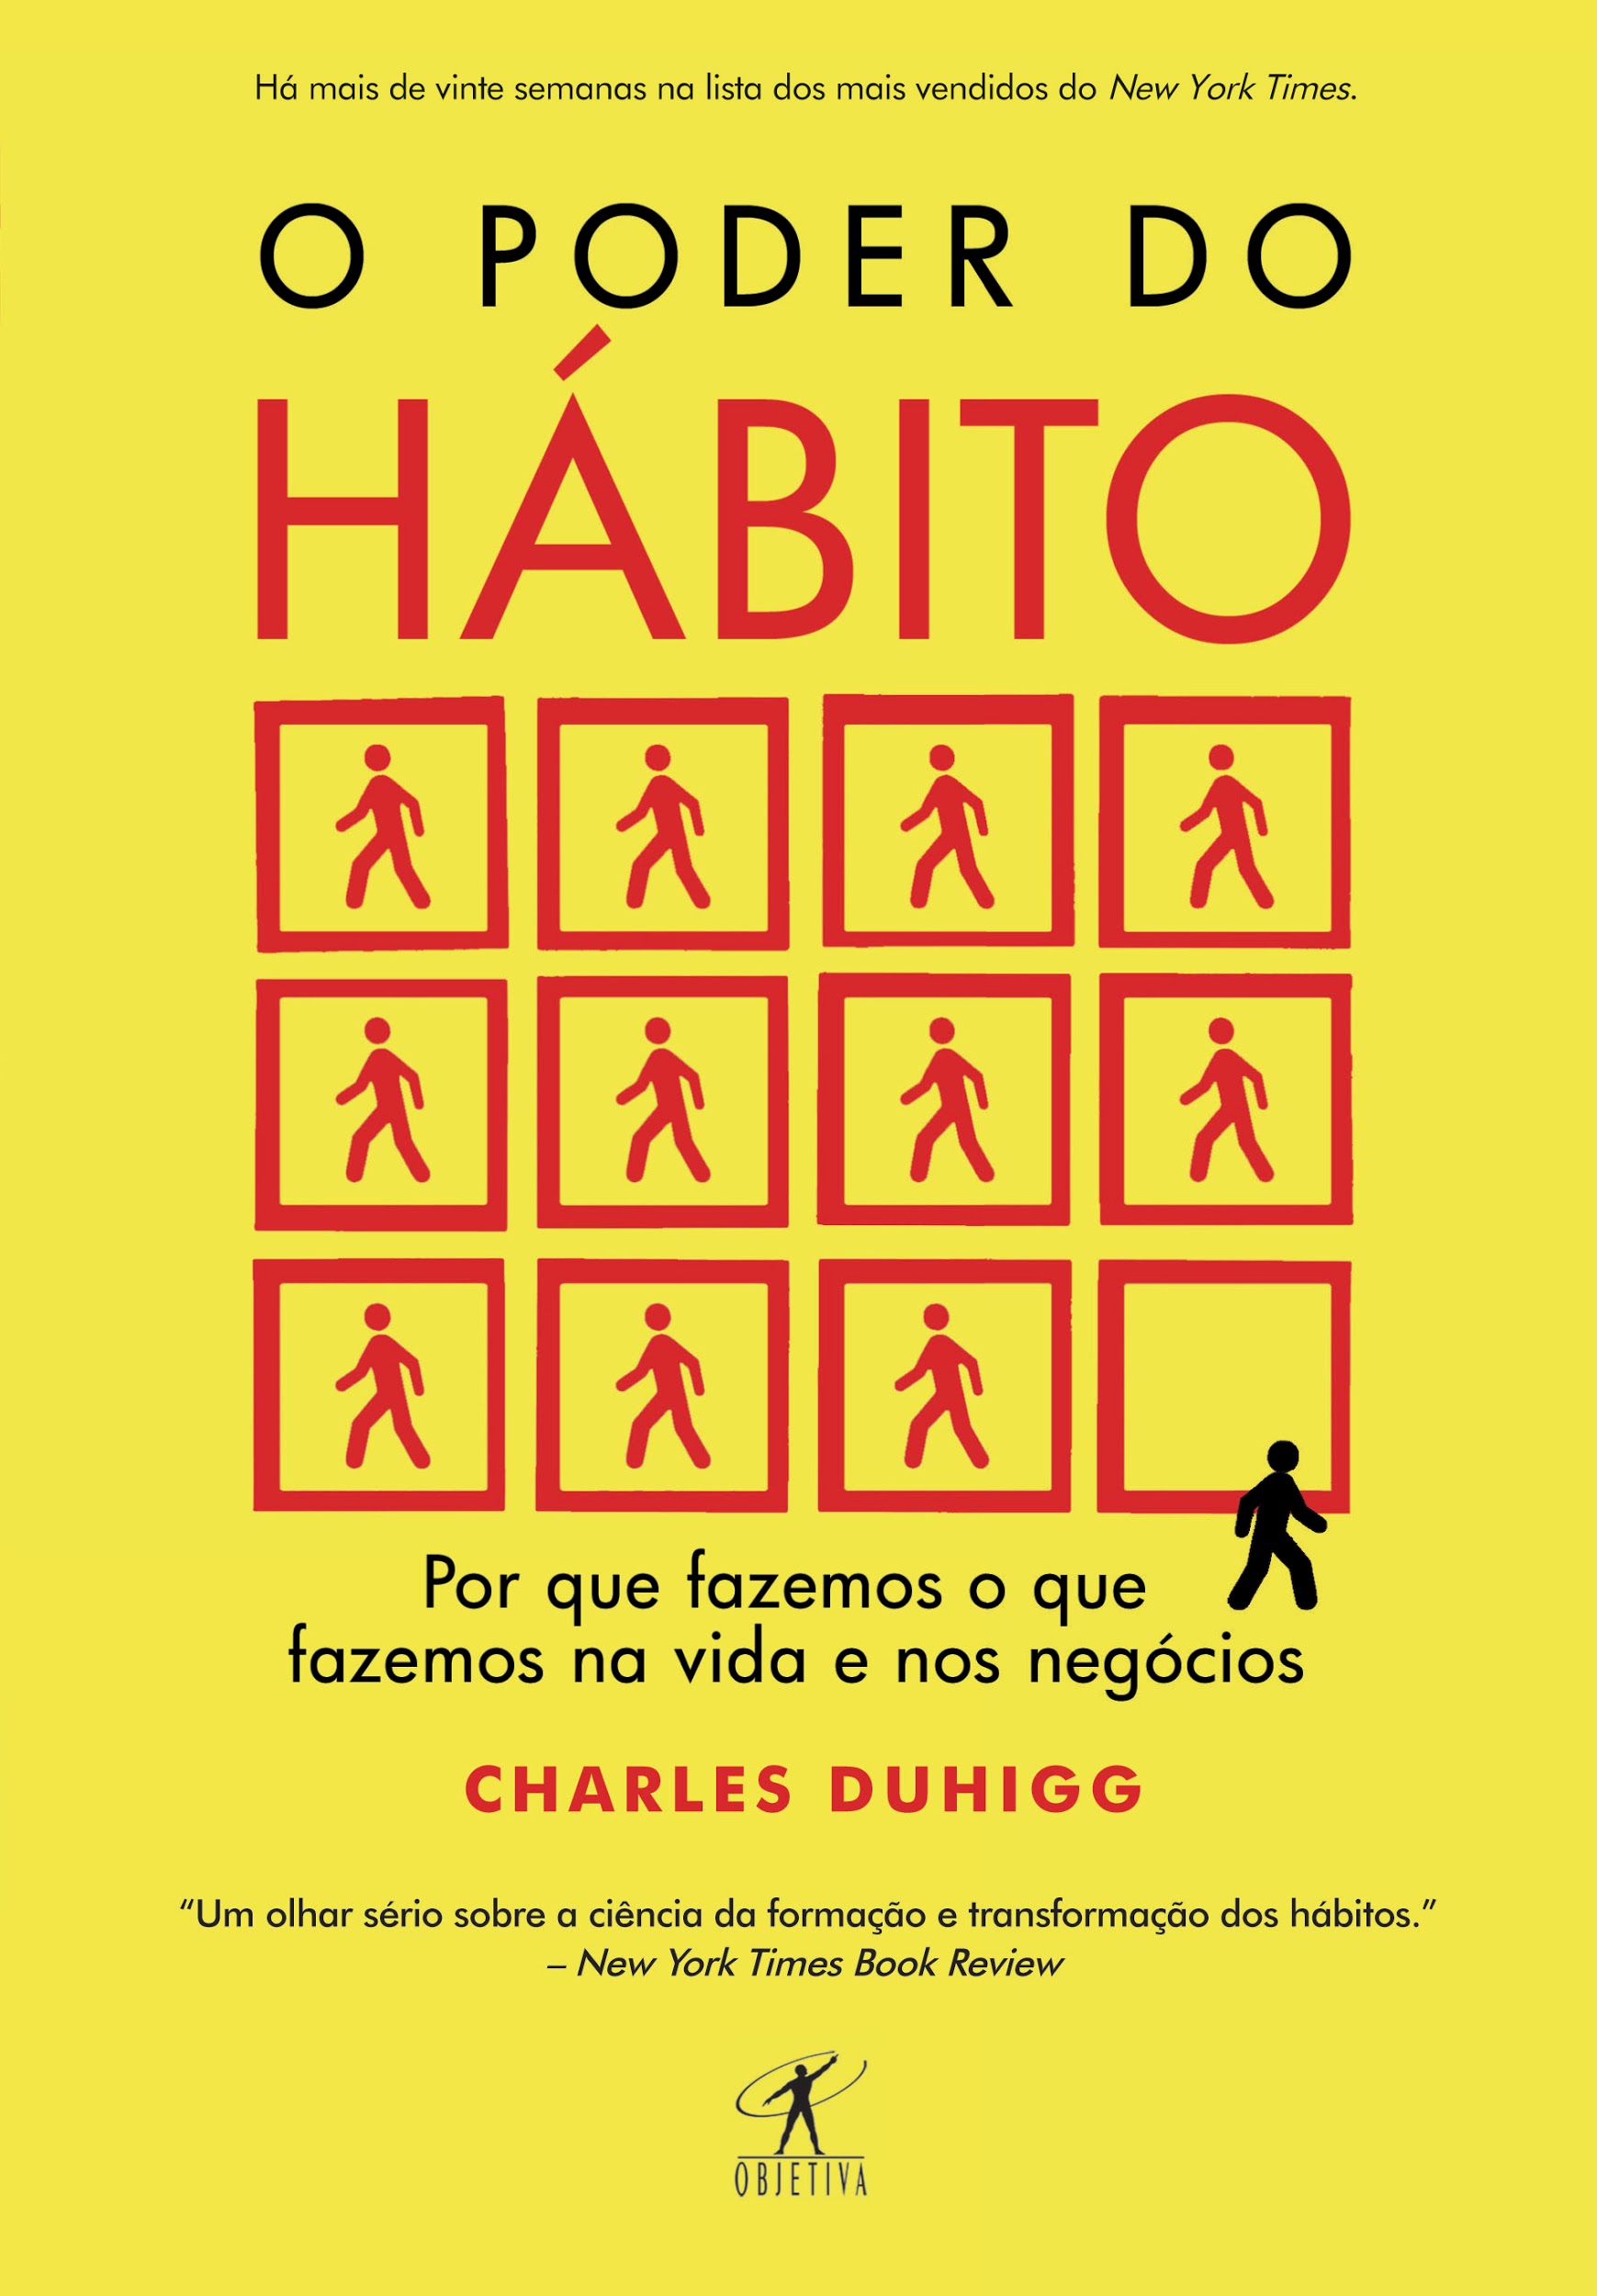 Capa do livro "O poder do hábito"